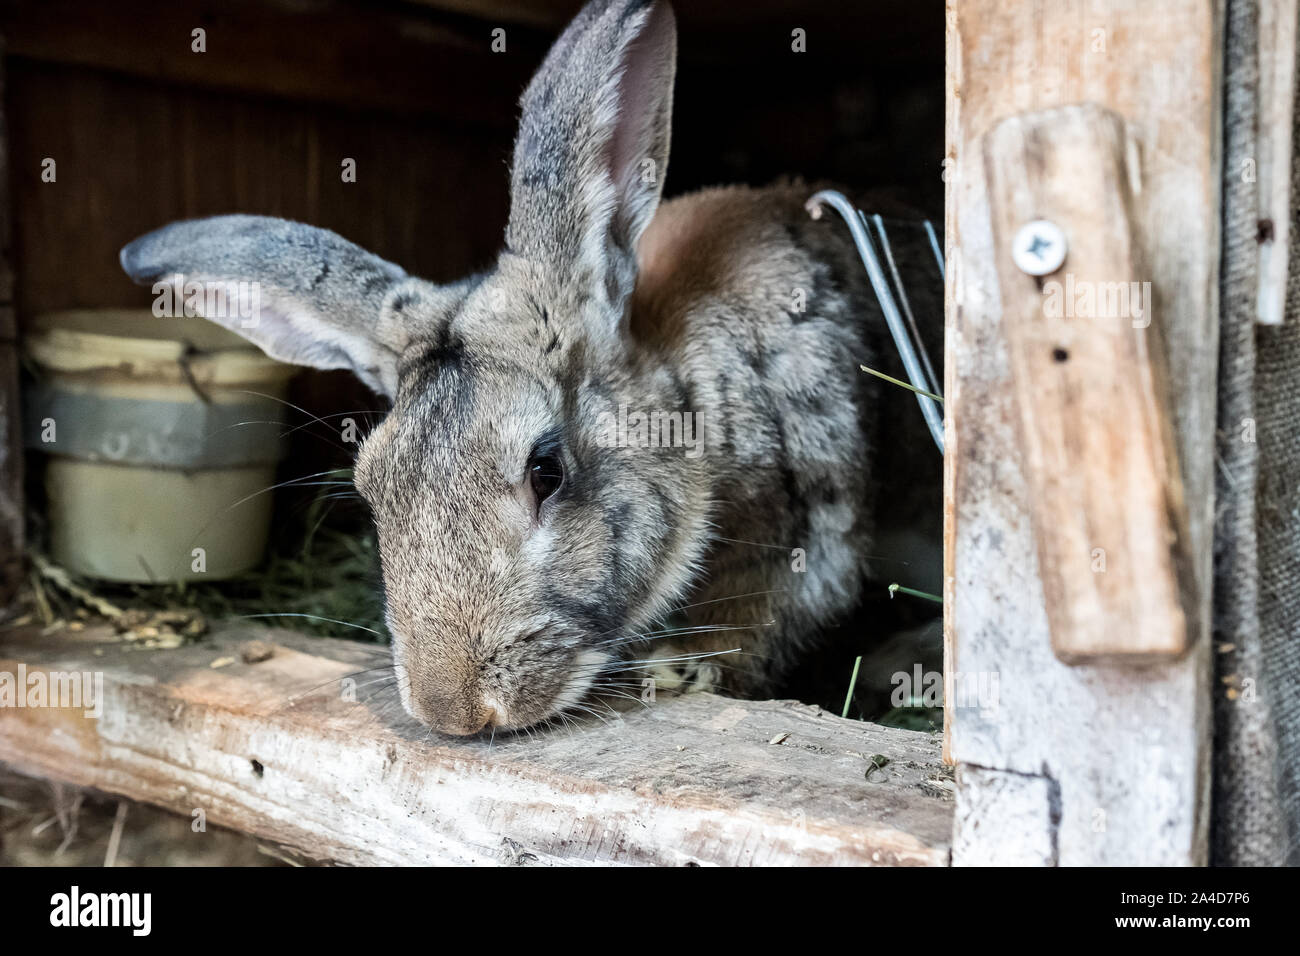 Il coniglio domestico in una gabbia in legno. Gli animali crescono nel giardino. Curioso il coniglio. Foto Stock